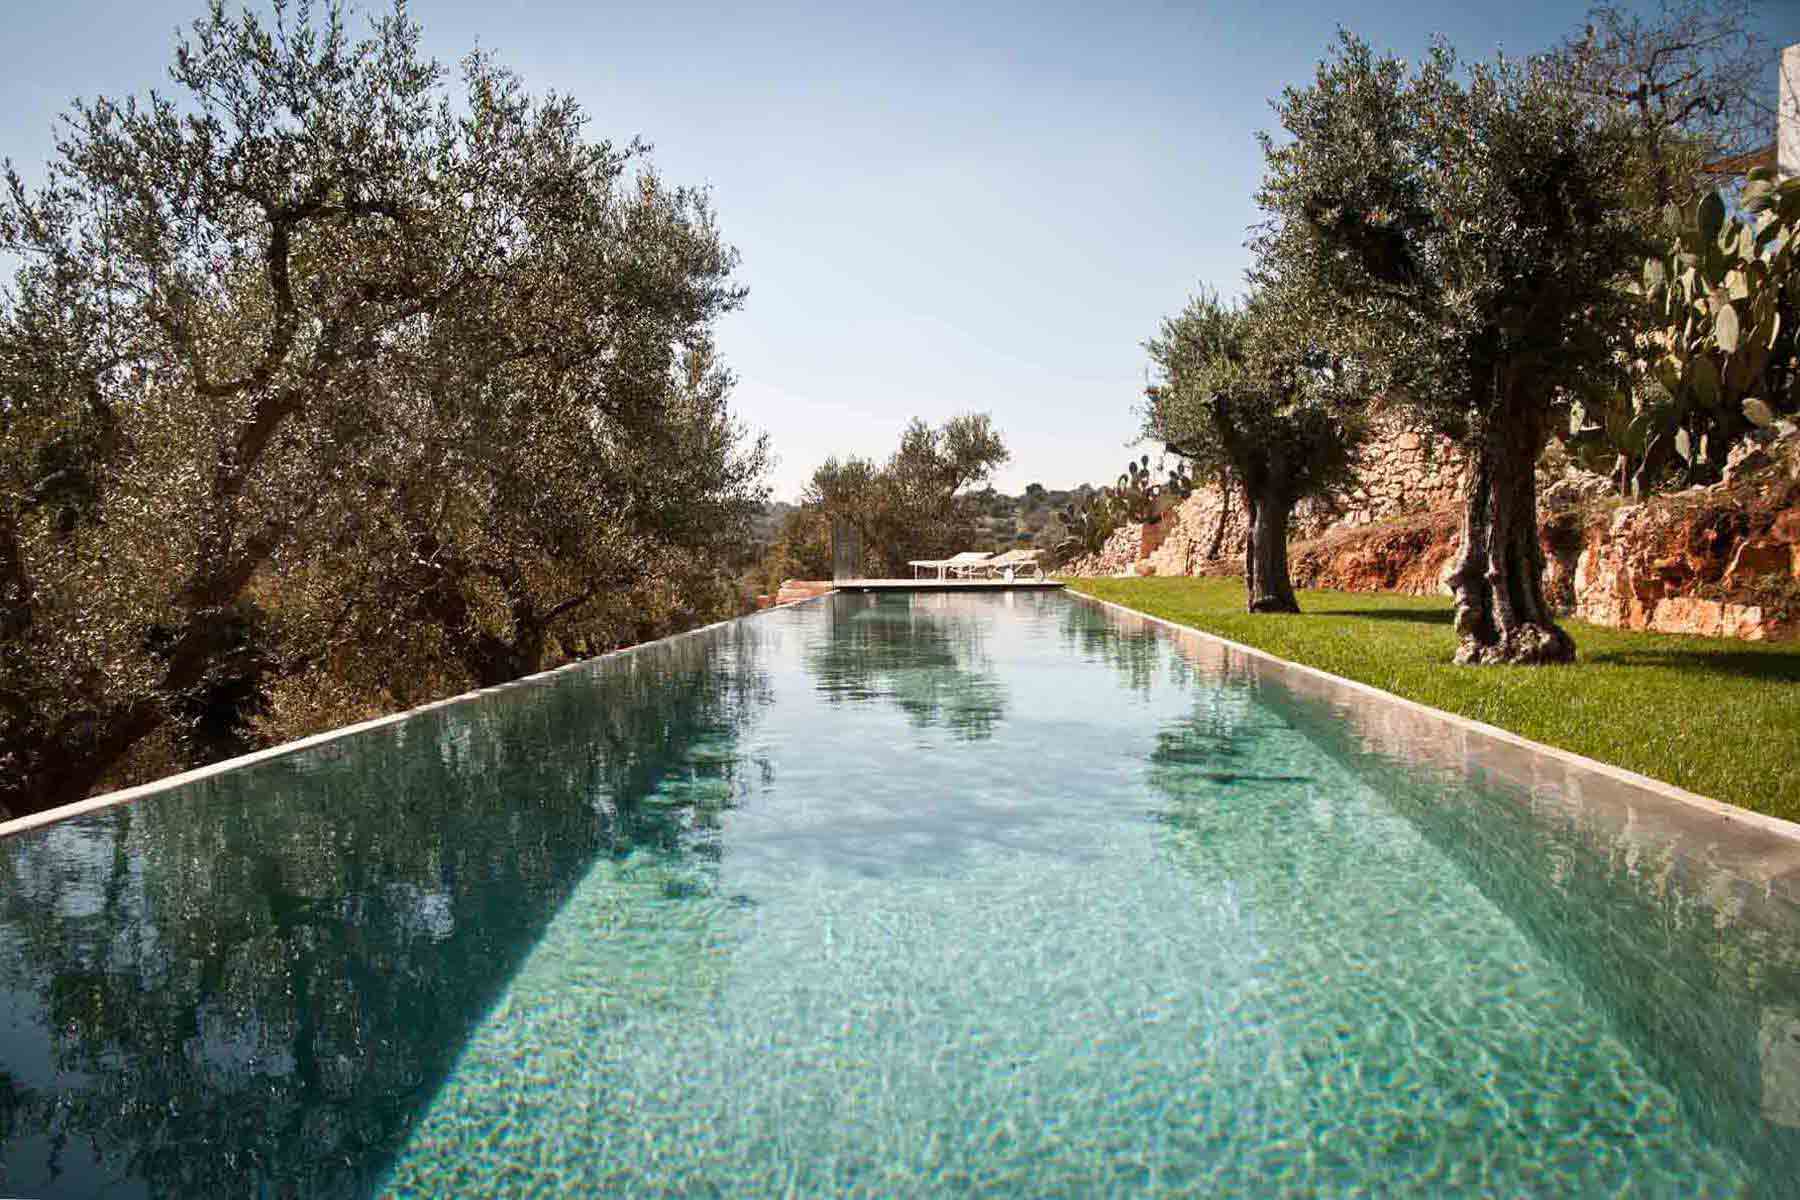 Trullo restored with swimming pool in Ostuni in Puglia